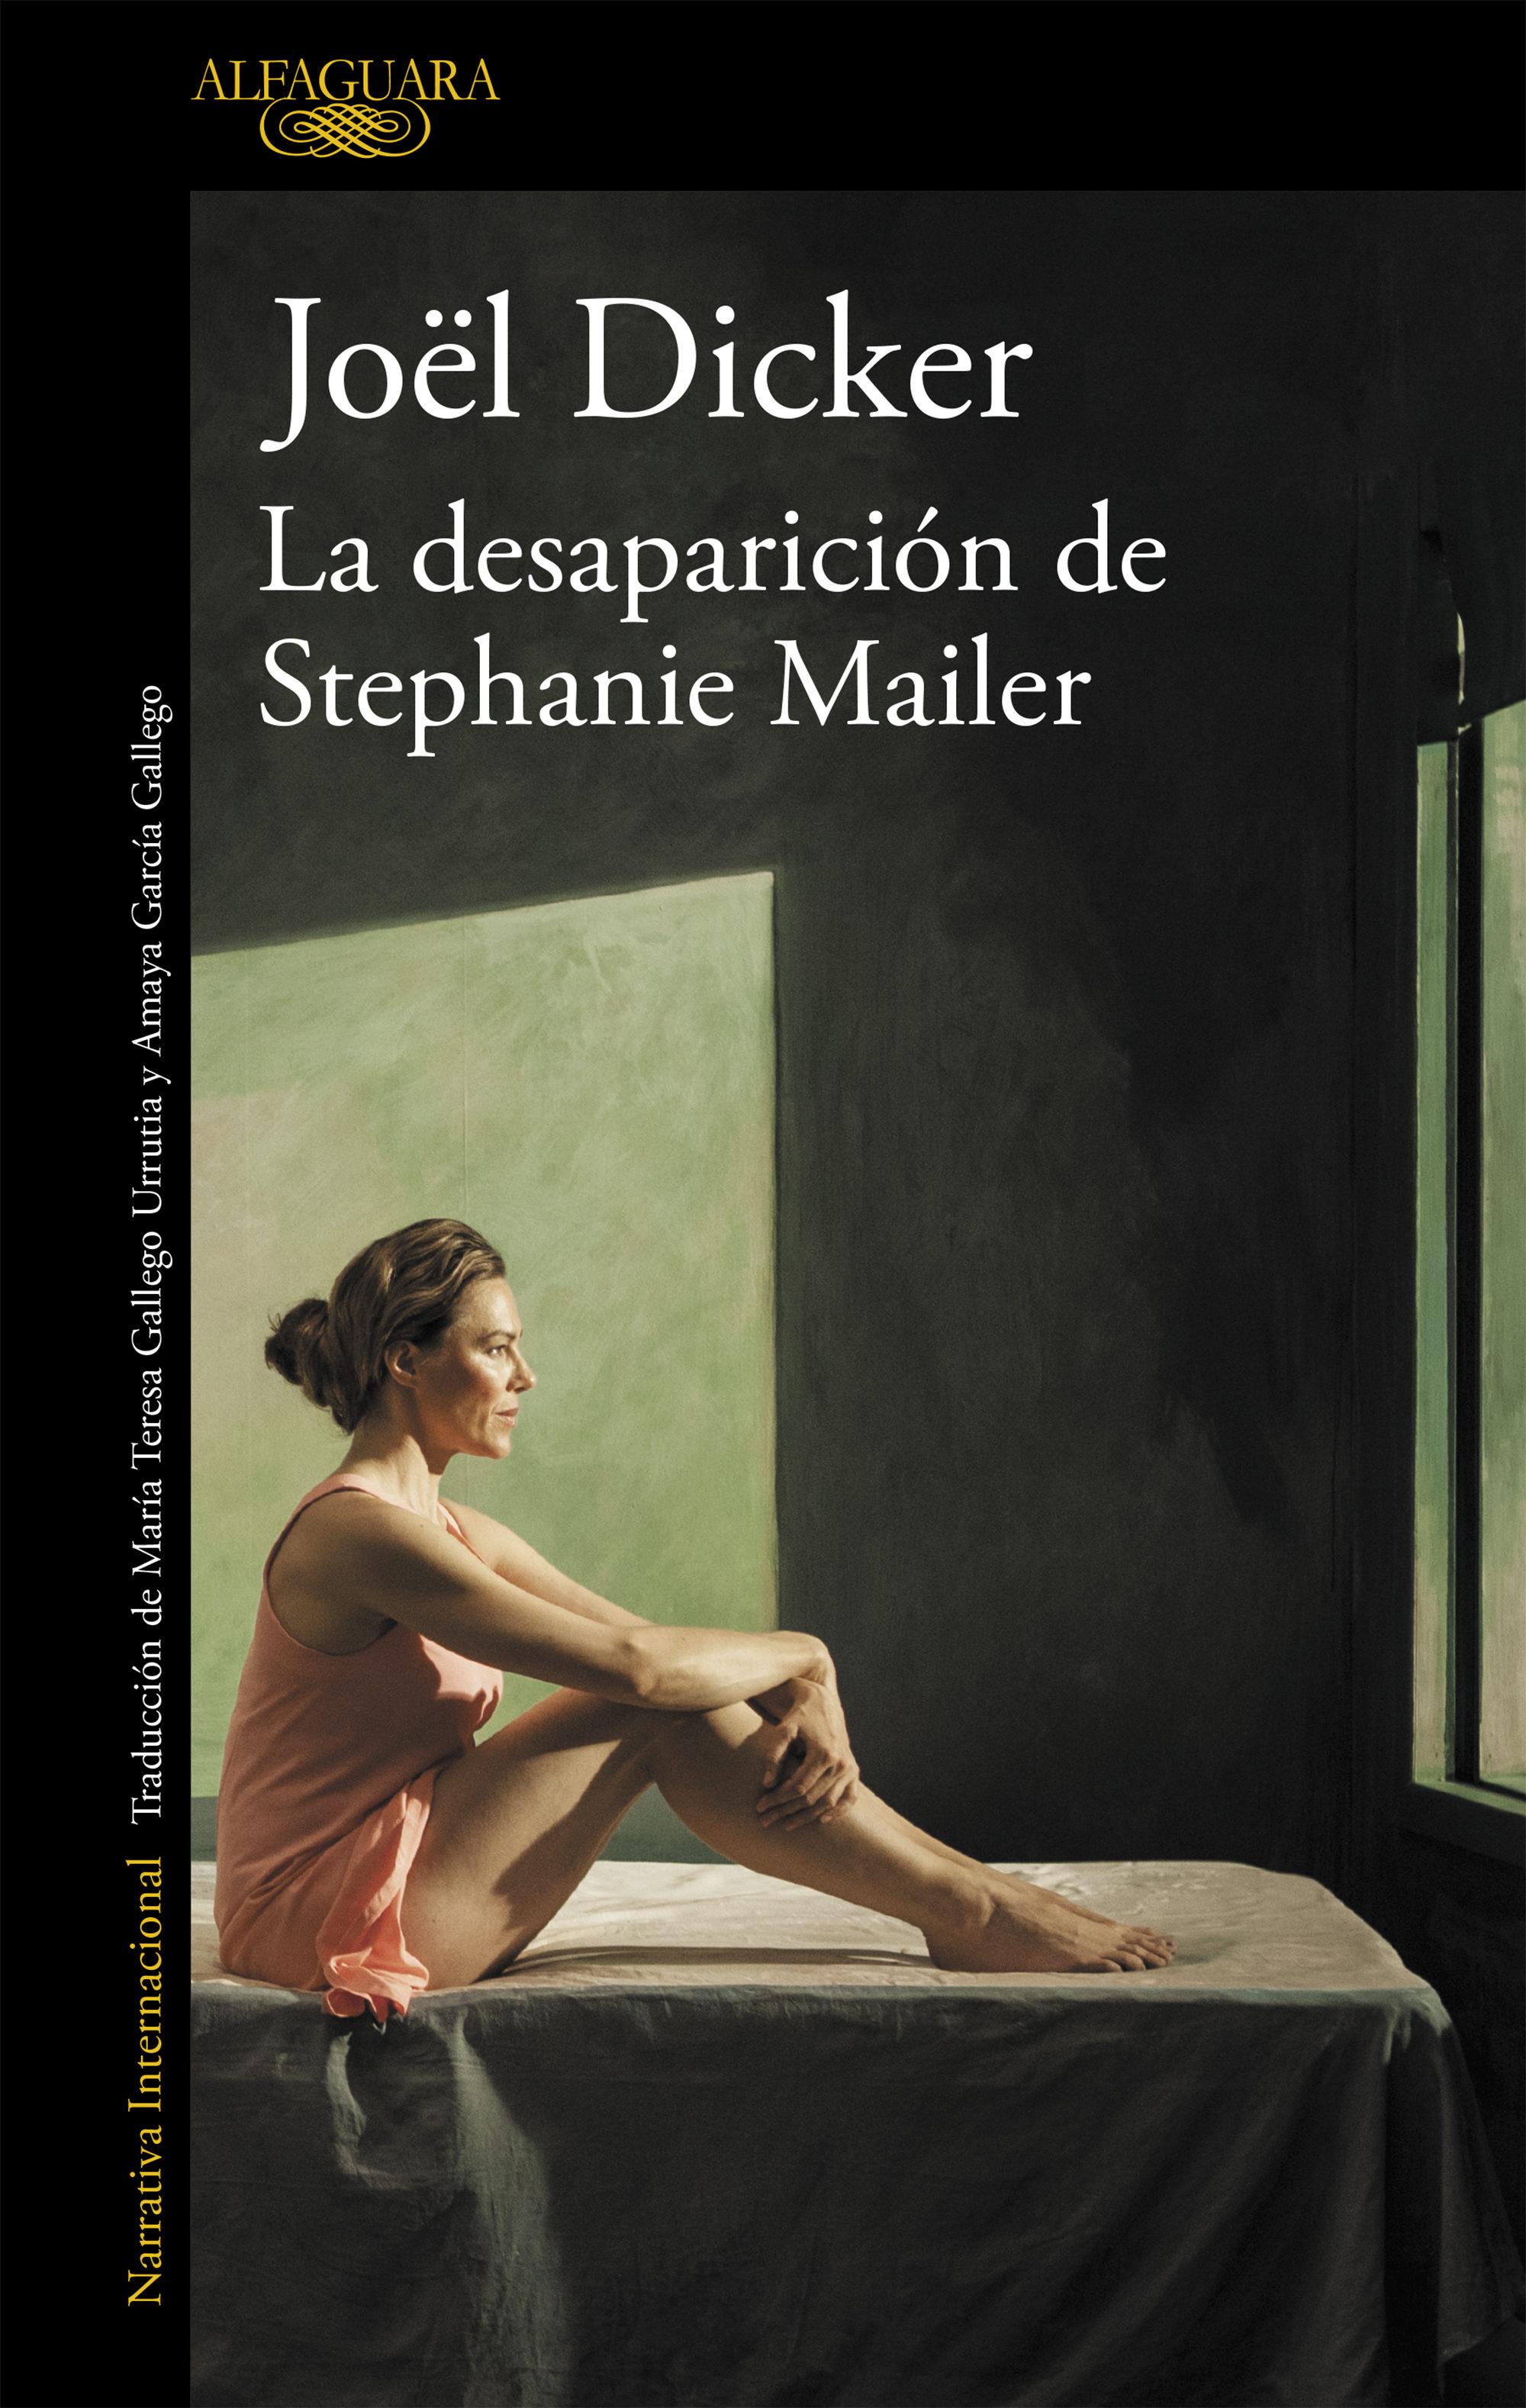 Libros recomendados: La desaparición de Stephanie Mailer (Joël Dicker)